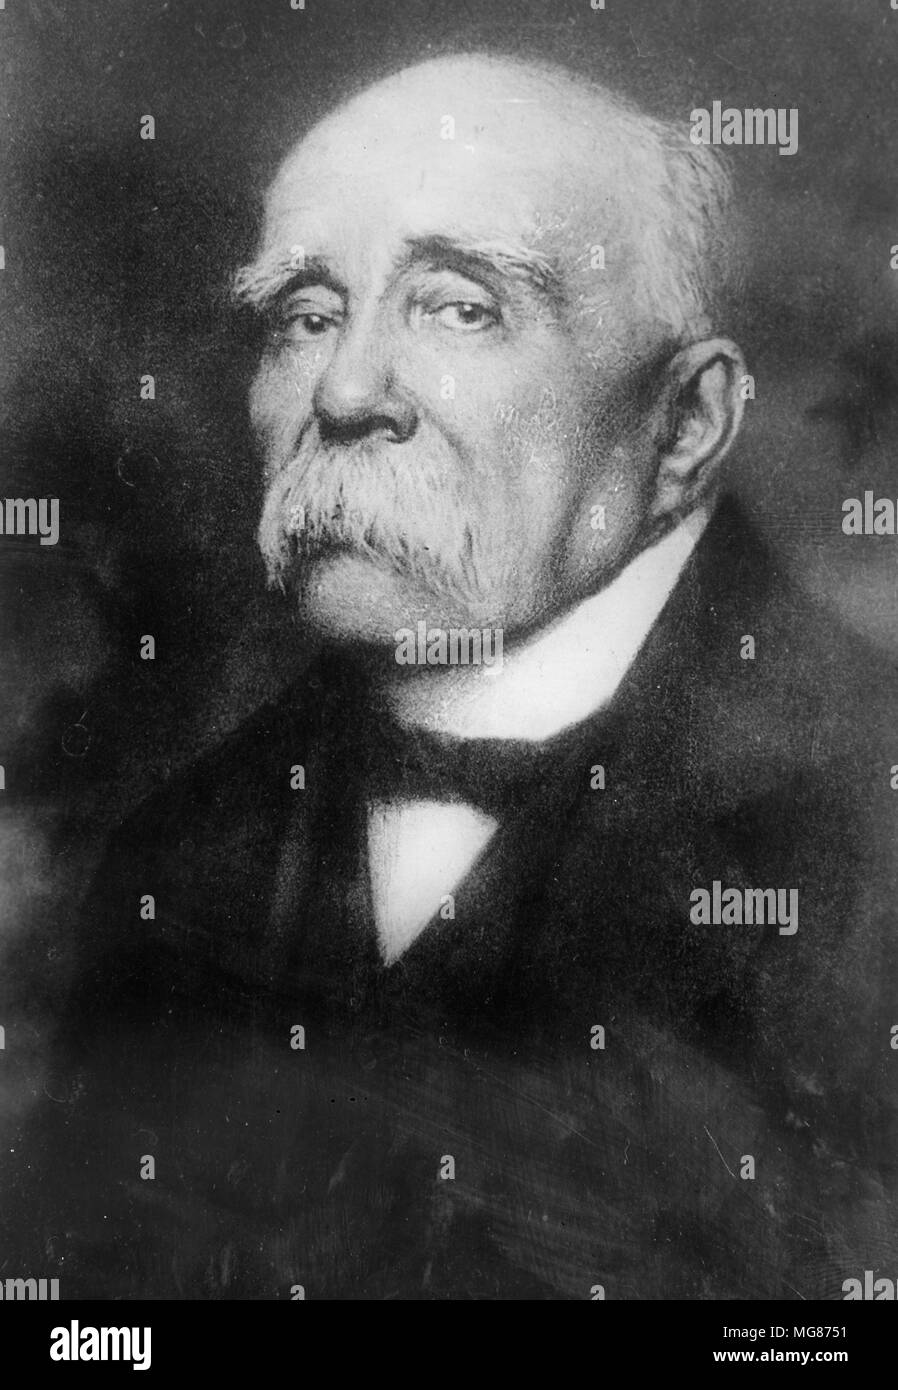 Georges Benjamin Clemenceau, (1841 - 1929) français a été le premier ministre de la France pendant la Première Guerre mondiale Banque D'Images